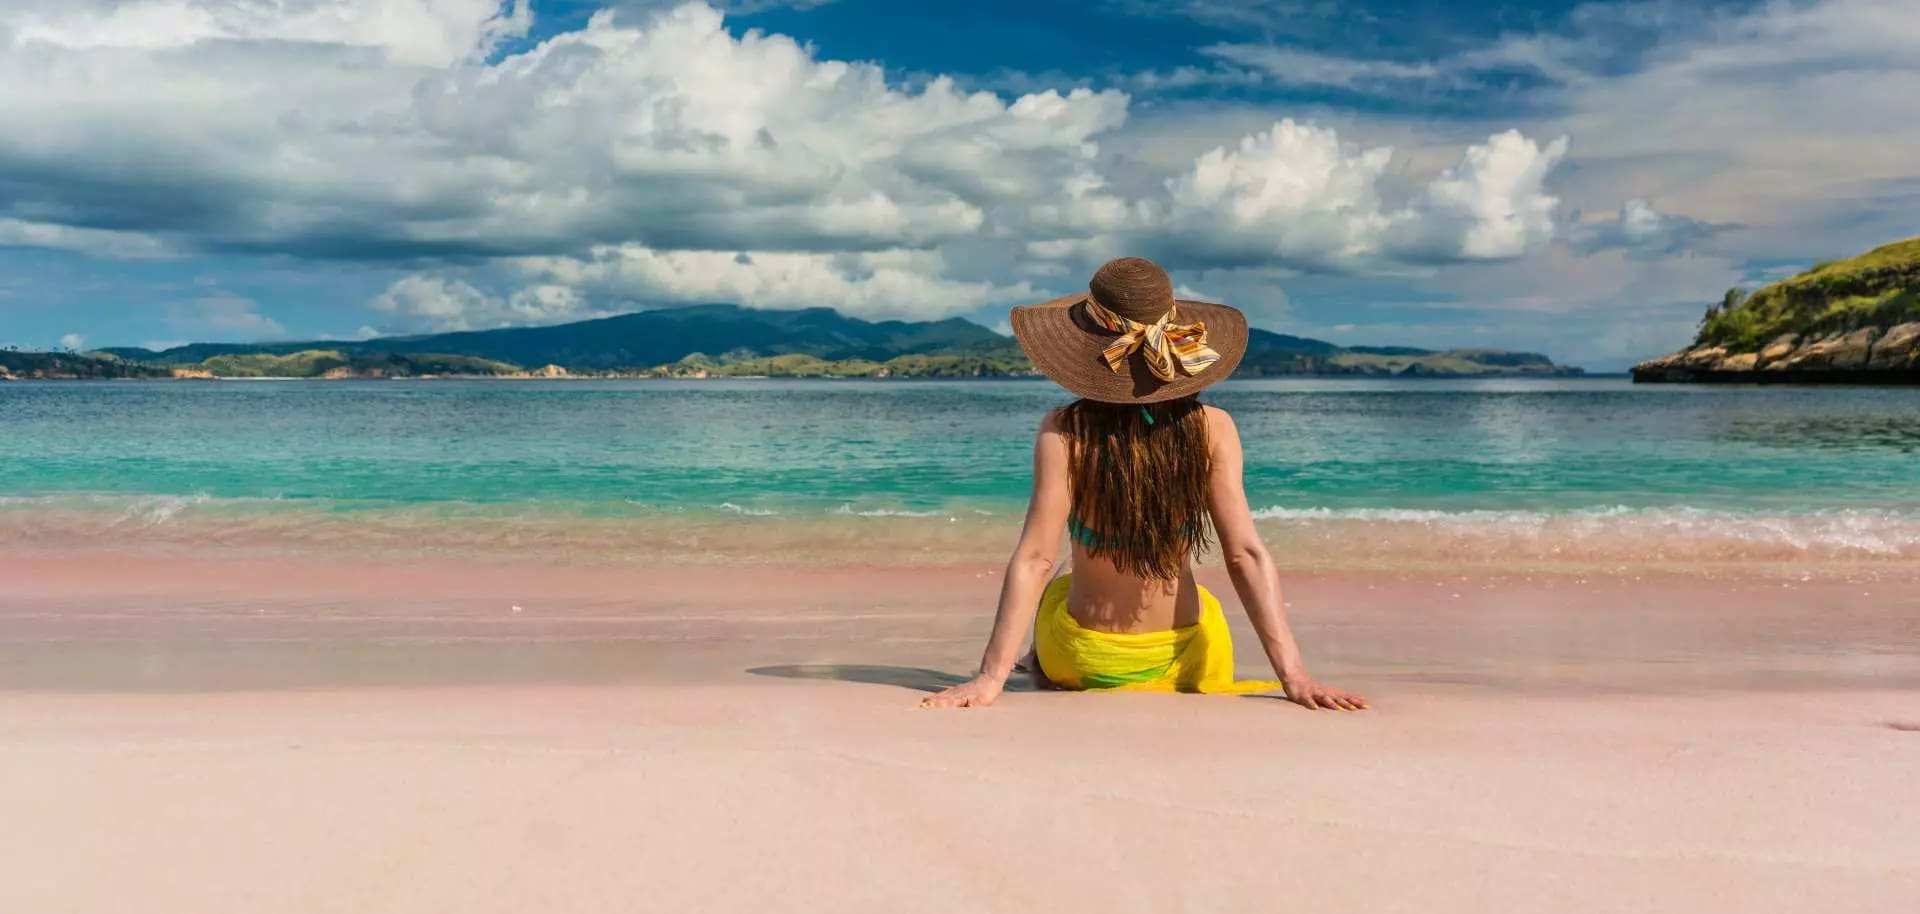  【科莫多島跳島一日遊】帕達爾島、科莫多島、粉紅沙灘、月牙灣、Manta Point、Kanawa 島 